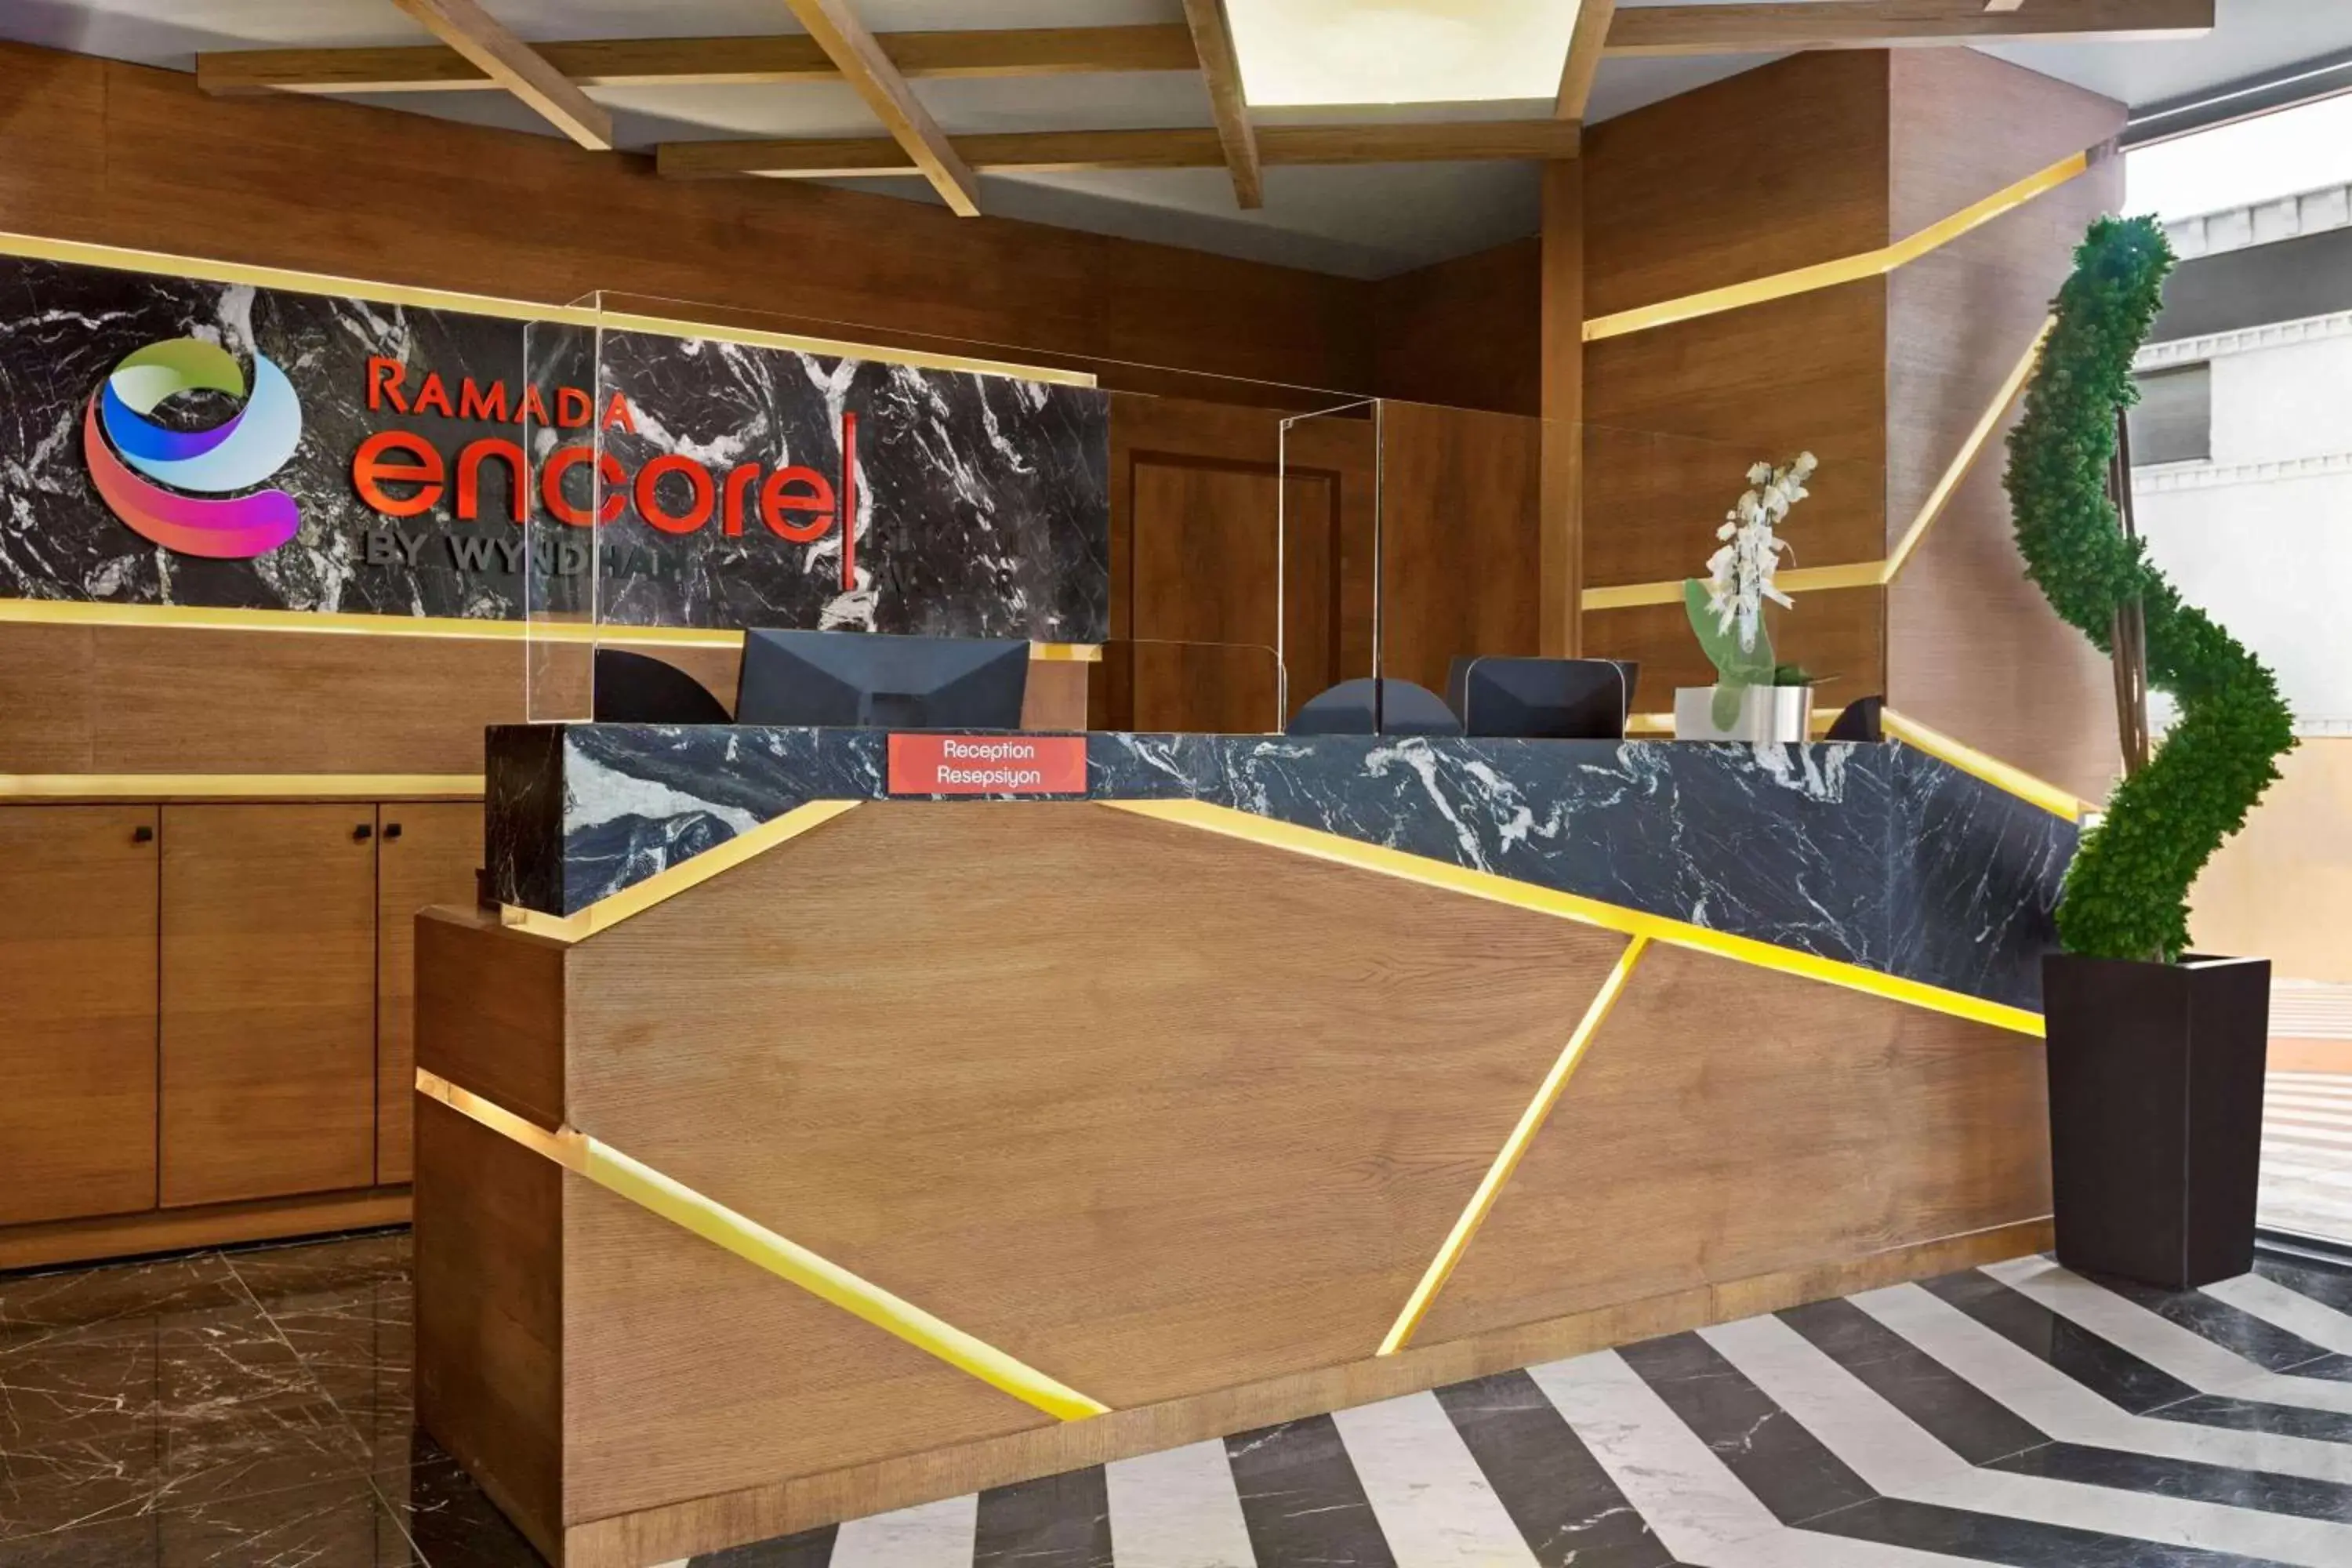 Lobby or reception in Ramada Encore by Wyndham Istanbul Avcilar